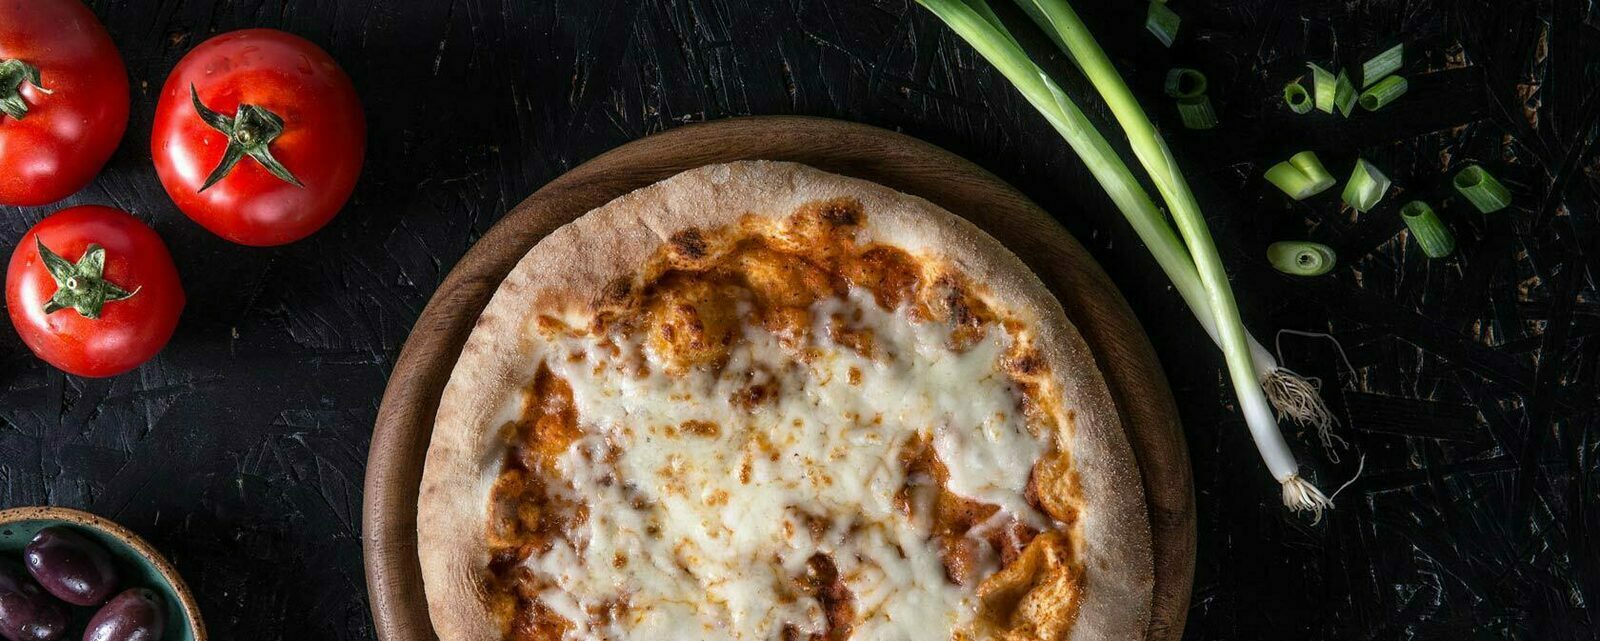 Donna Italia: eine authentische Steinofen-Pizza in nur drei Minuten.